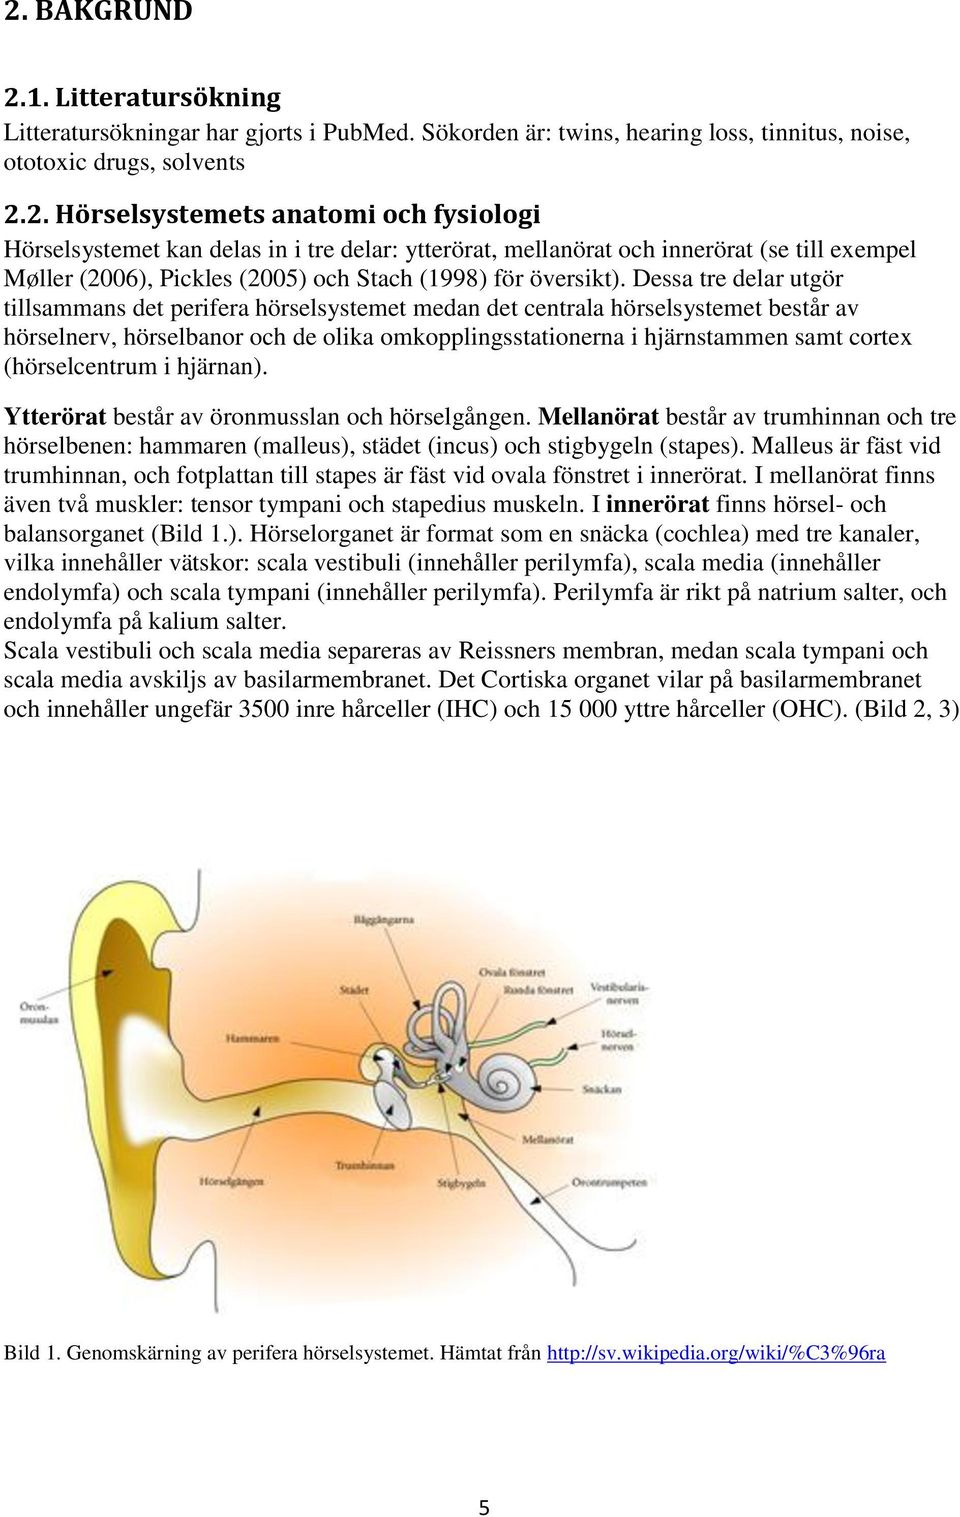 (hörselcentrum i hjärnan). Ytterörat består av öronmusslan och hörselgången. Mellanörat består av trumhinnan och tre hörselbenen: hammaren (malleus), städet (incus) och stigbygeln (stapes).